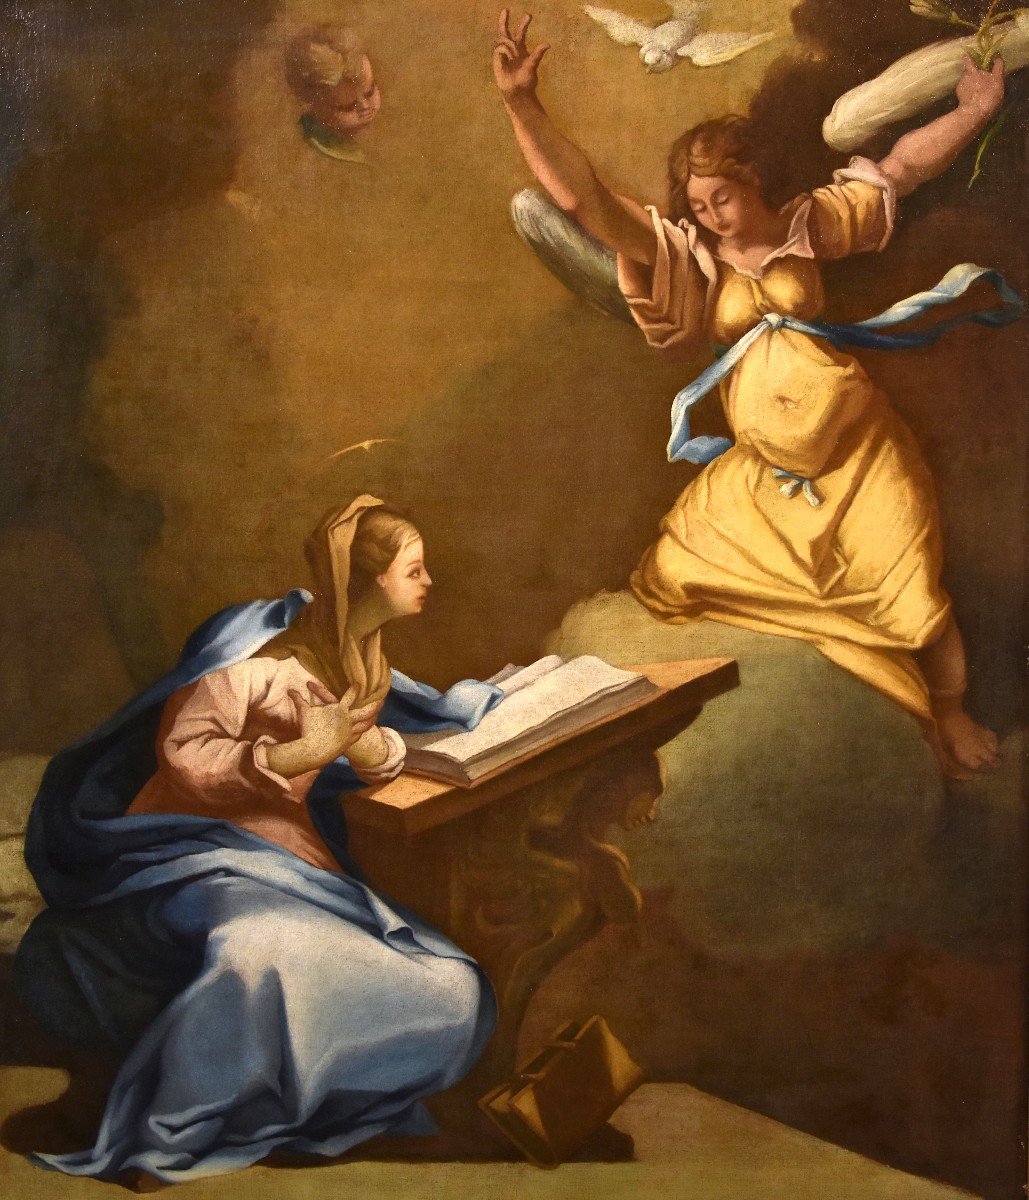 L’Annunciazione, Paolo De Matteis (Naples 1662 - Napoli, 1728) Cerchia di 